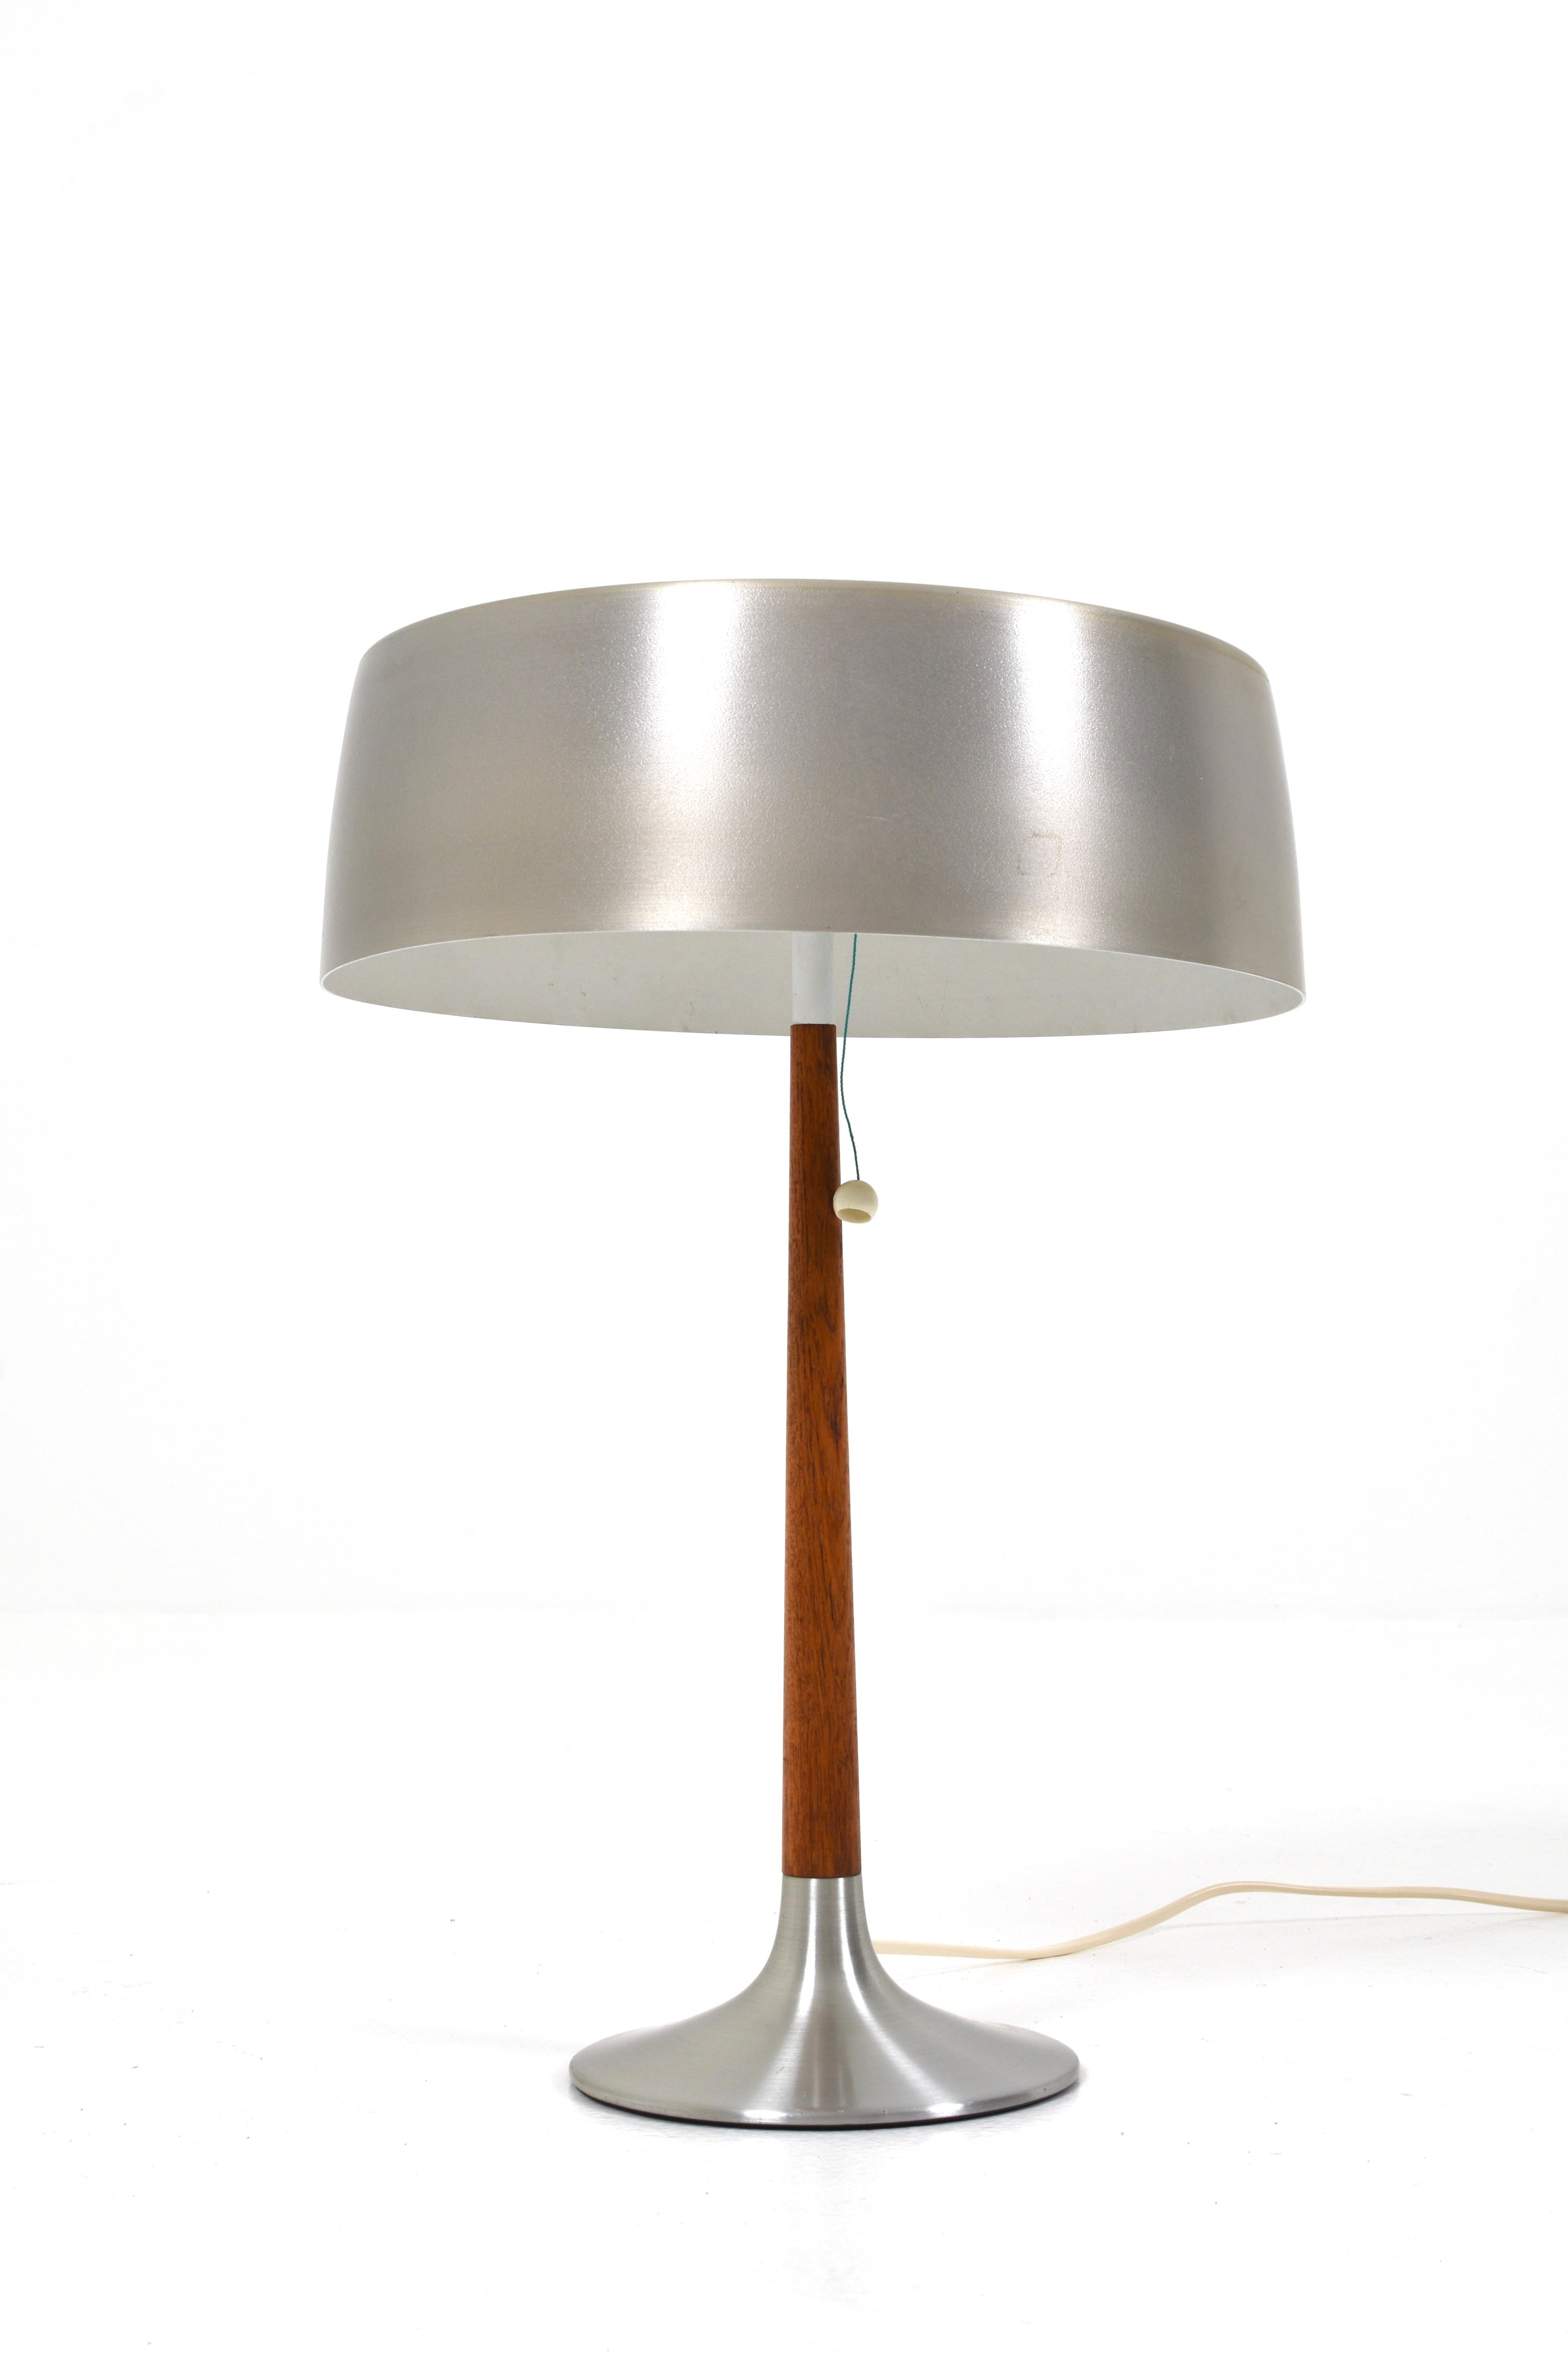 Die Lampe hat ein elegantes und stilvolles Design, das aus gebürstetem Aluminium und Teakholz besteht. Der Schirm der Lampe hat einige Gebrauchsspuren.